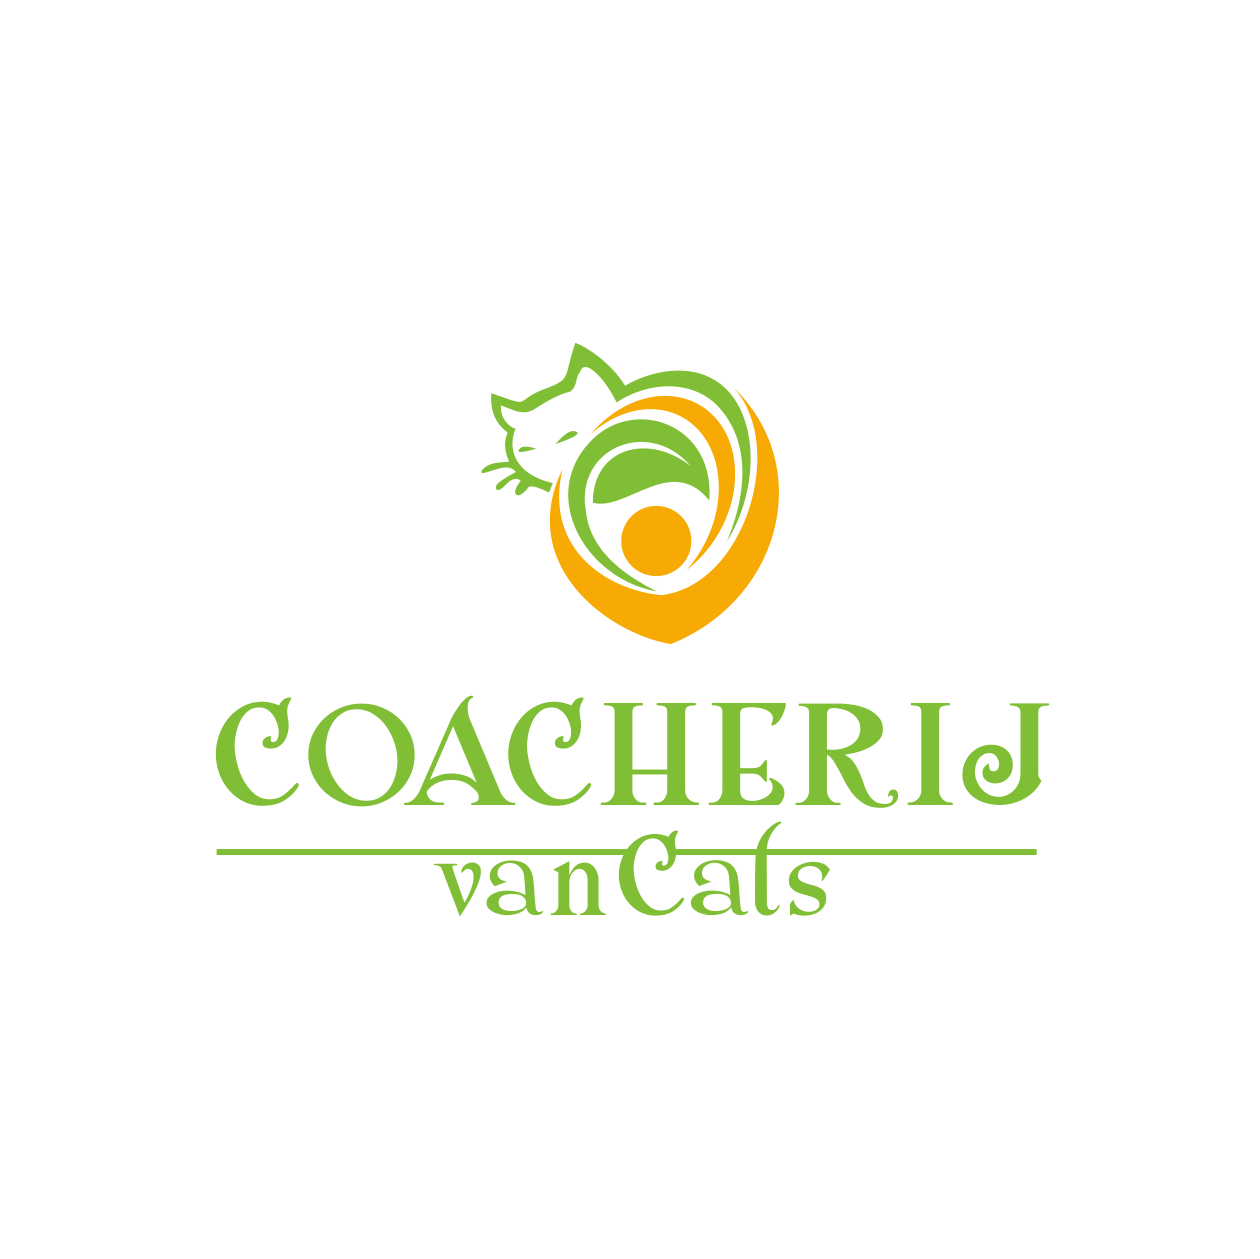 CC Company Logo - It Company Logo Design for Coacherij van Cats or CC or CvC